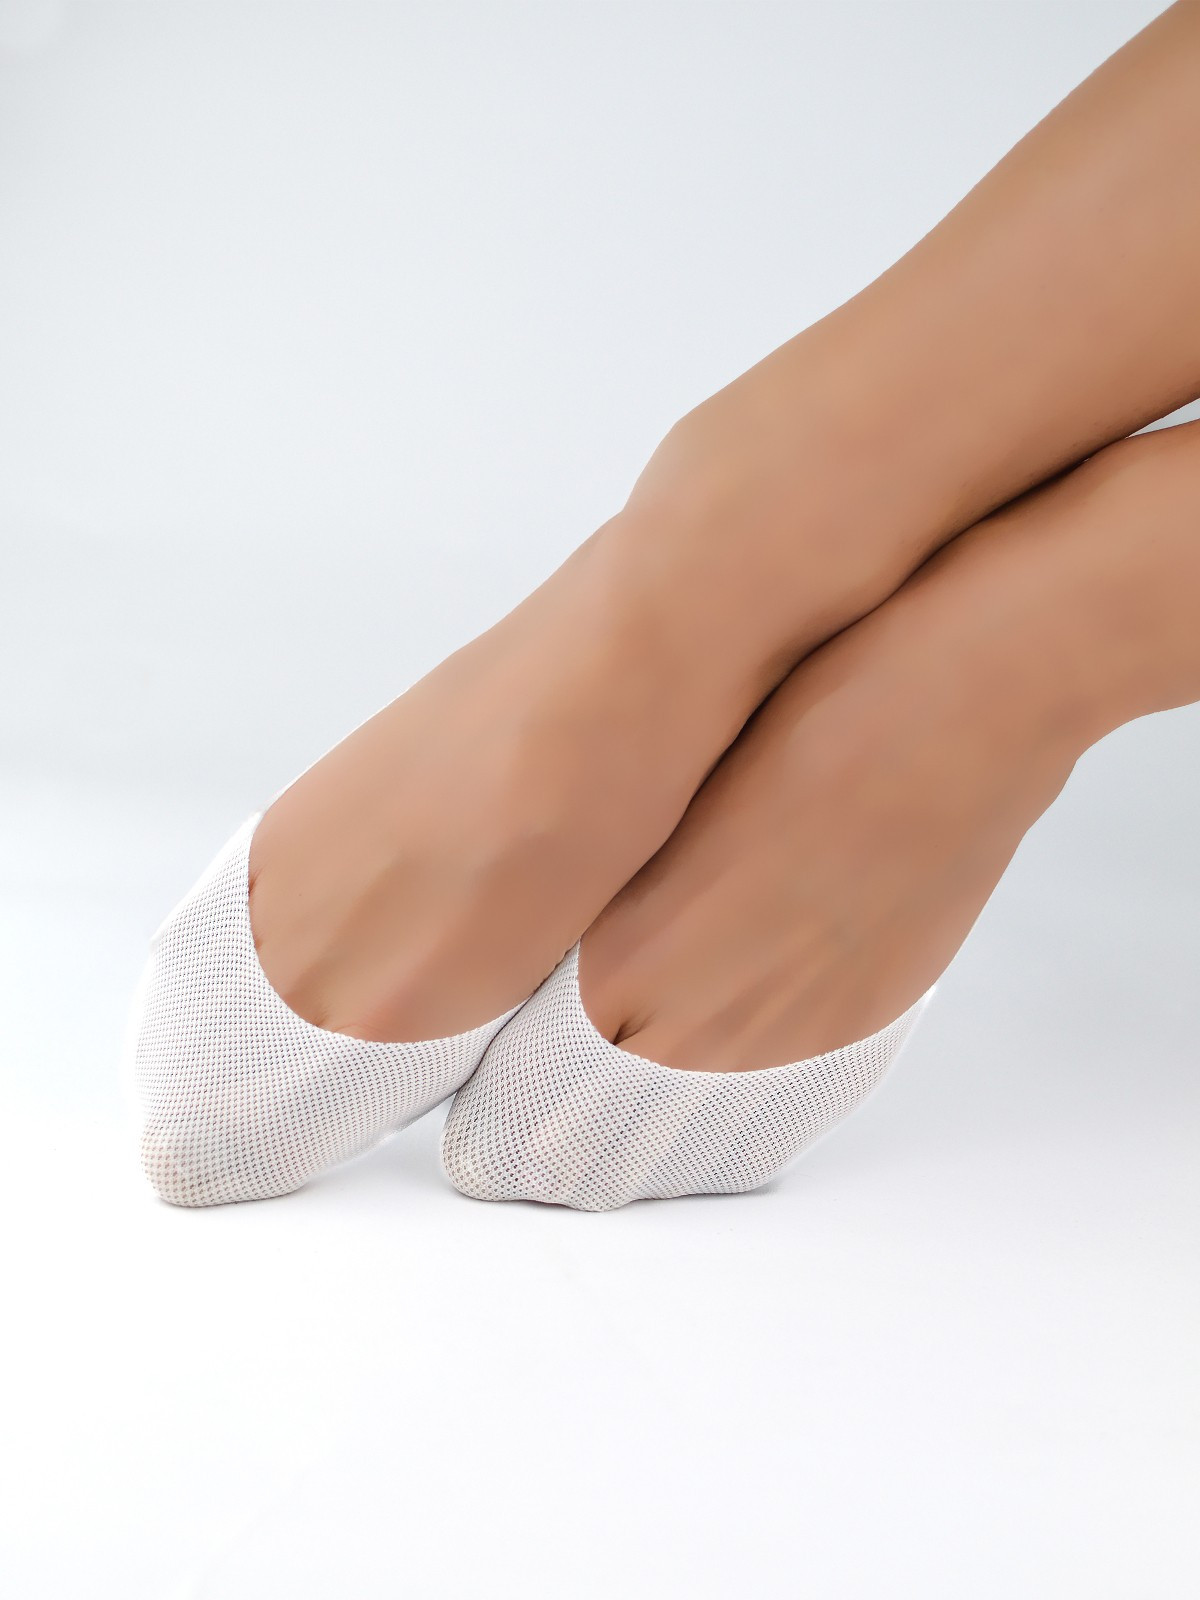 Dámské ponožky - baleríny Noviti SN022 Laserové, Silikon, ABS bílá 36-41